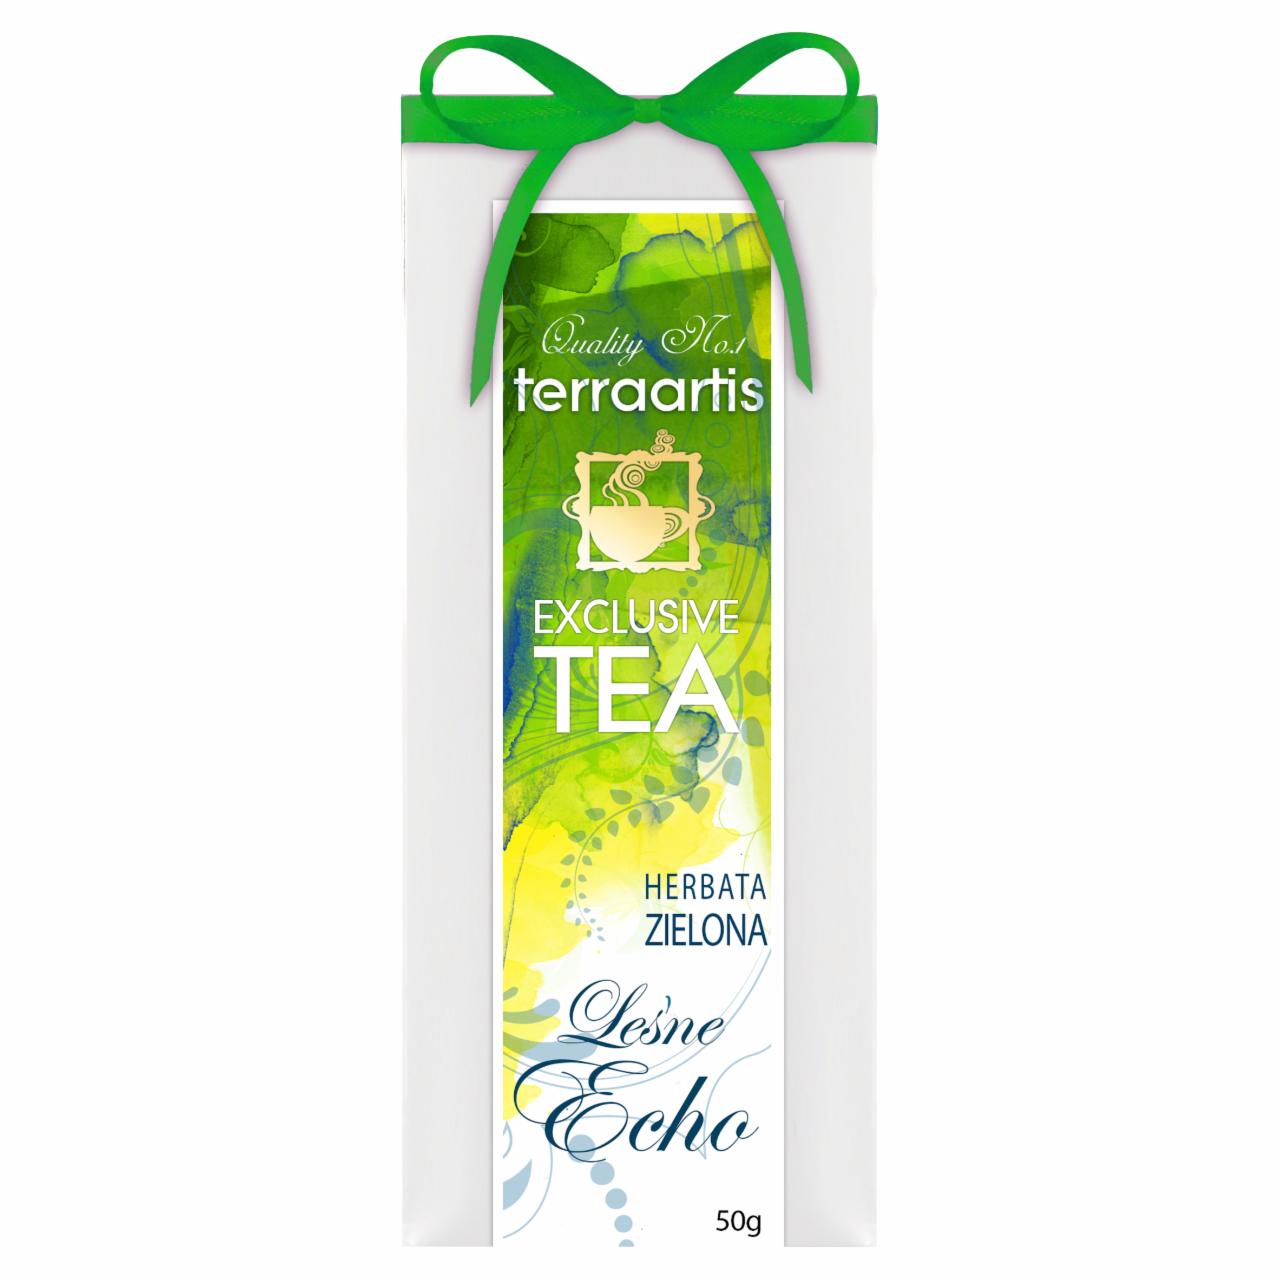 Zdjęcia - Terraartis Exclusive Tea Herbata zielona leśne echo 50 g